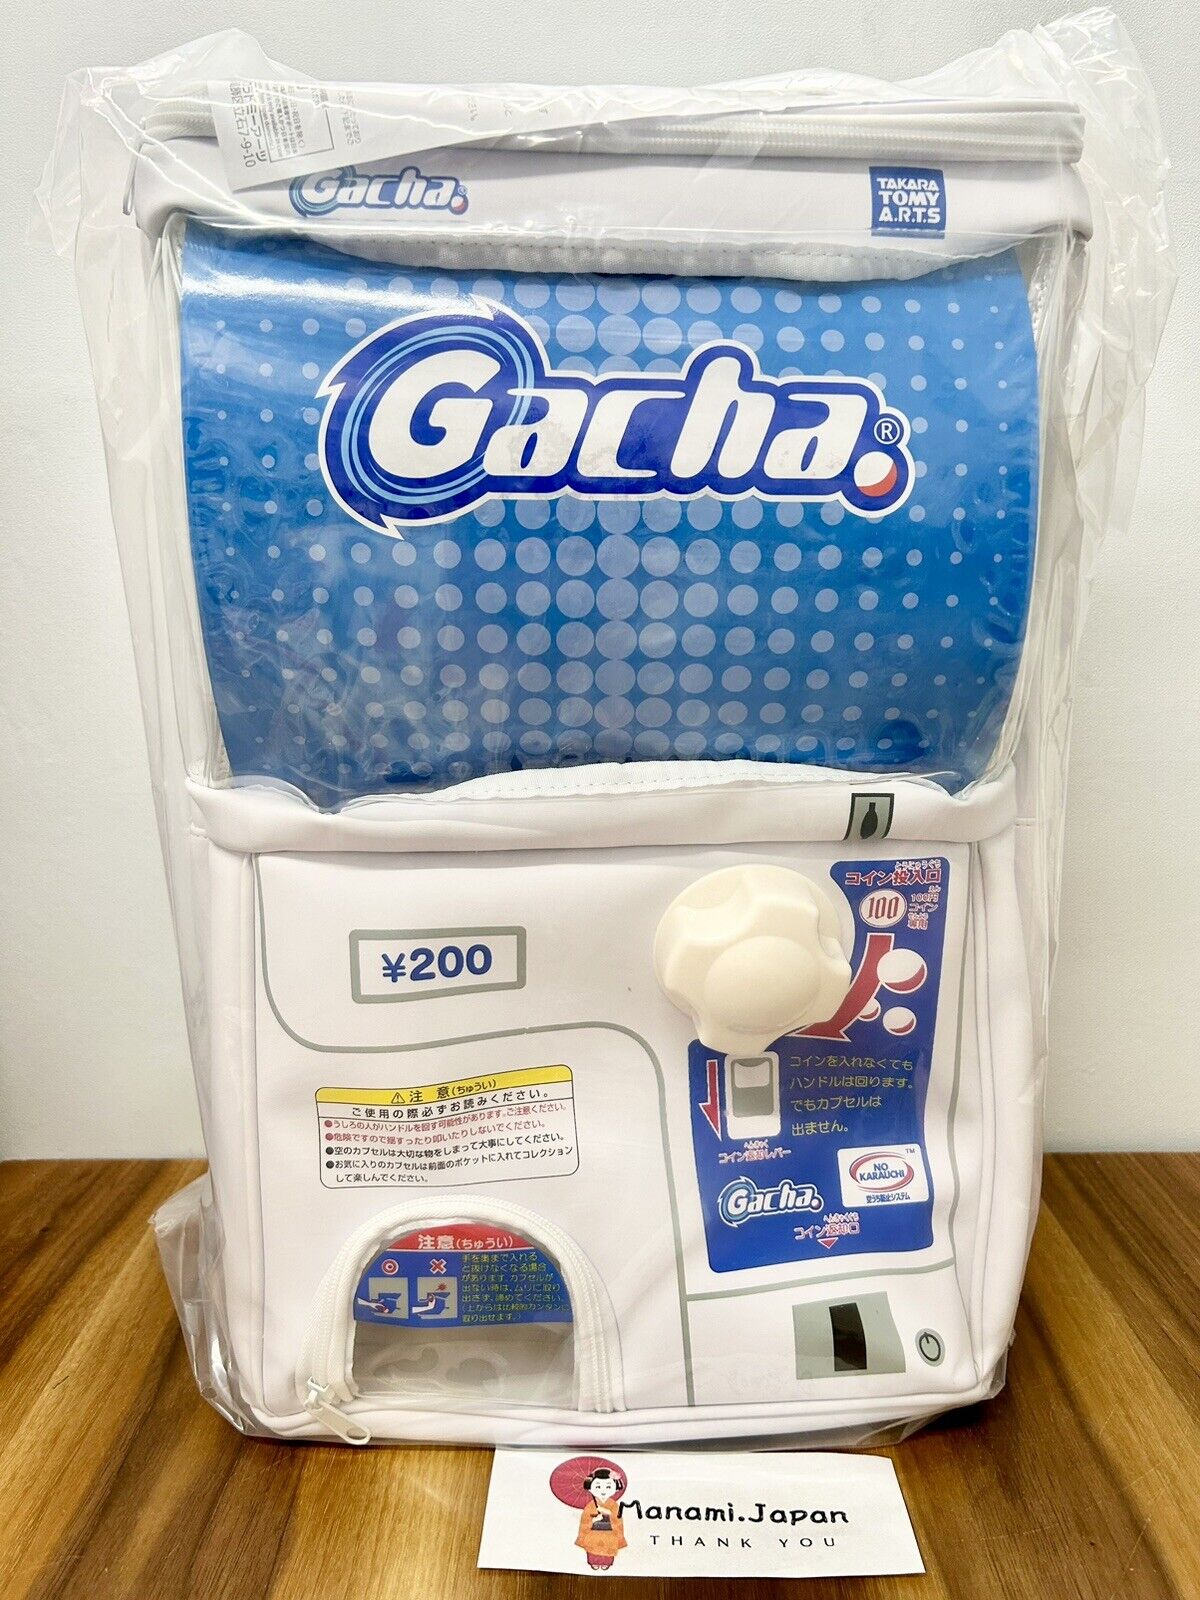 Takara Tomy Arts Showy Gacha Backpack with 10 capsules Gashapon Gachagacha